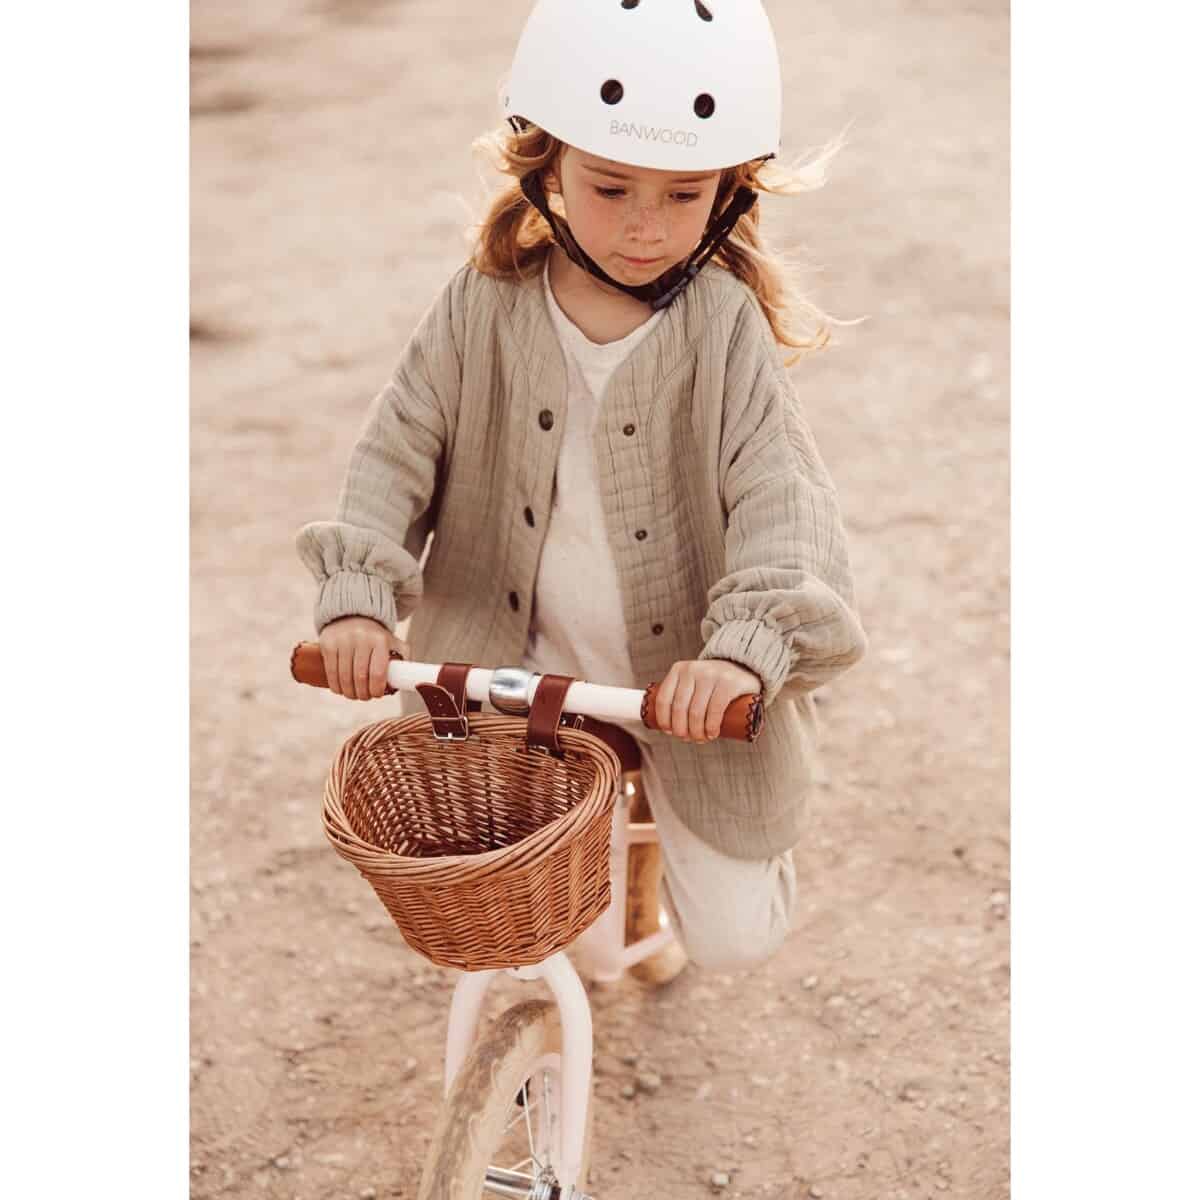 Kaunis lasten Banwood-pyöräilykypärä.